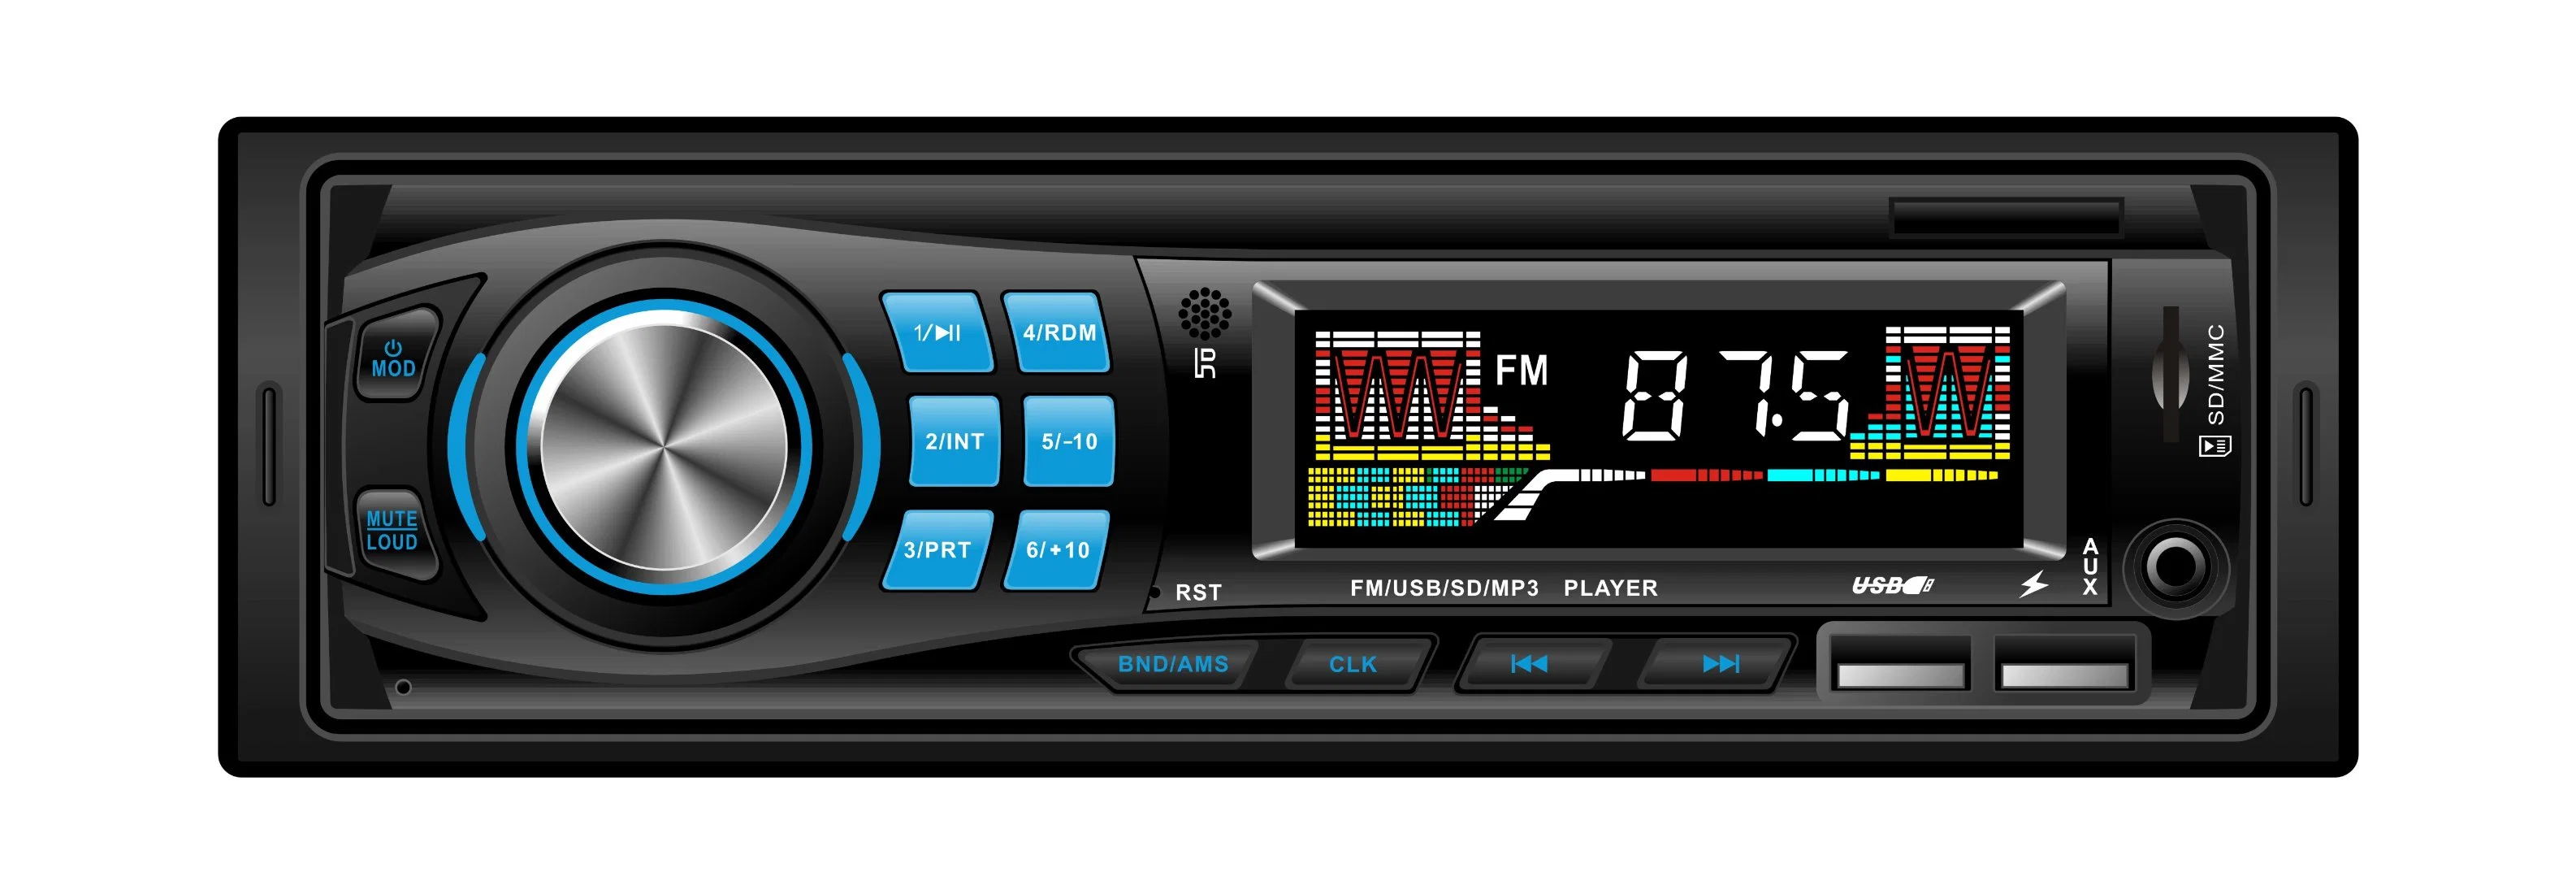 L3013 voiture électrique 1 DIN MP3 Audio MP3 système de lecteur Radio